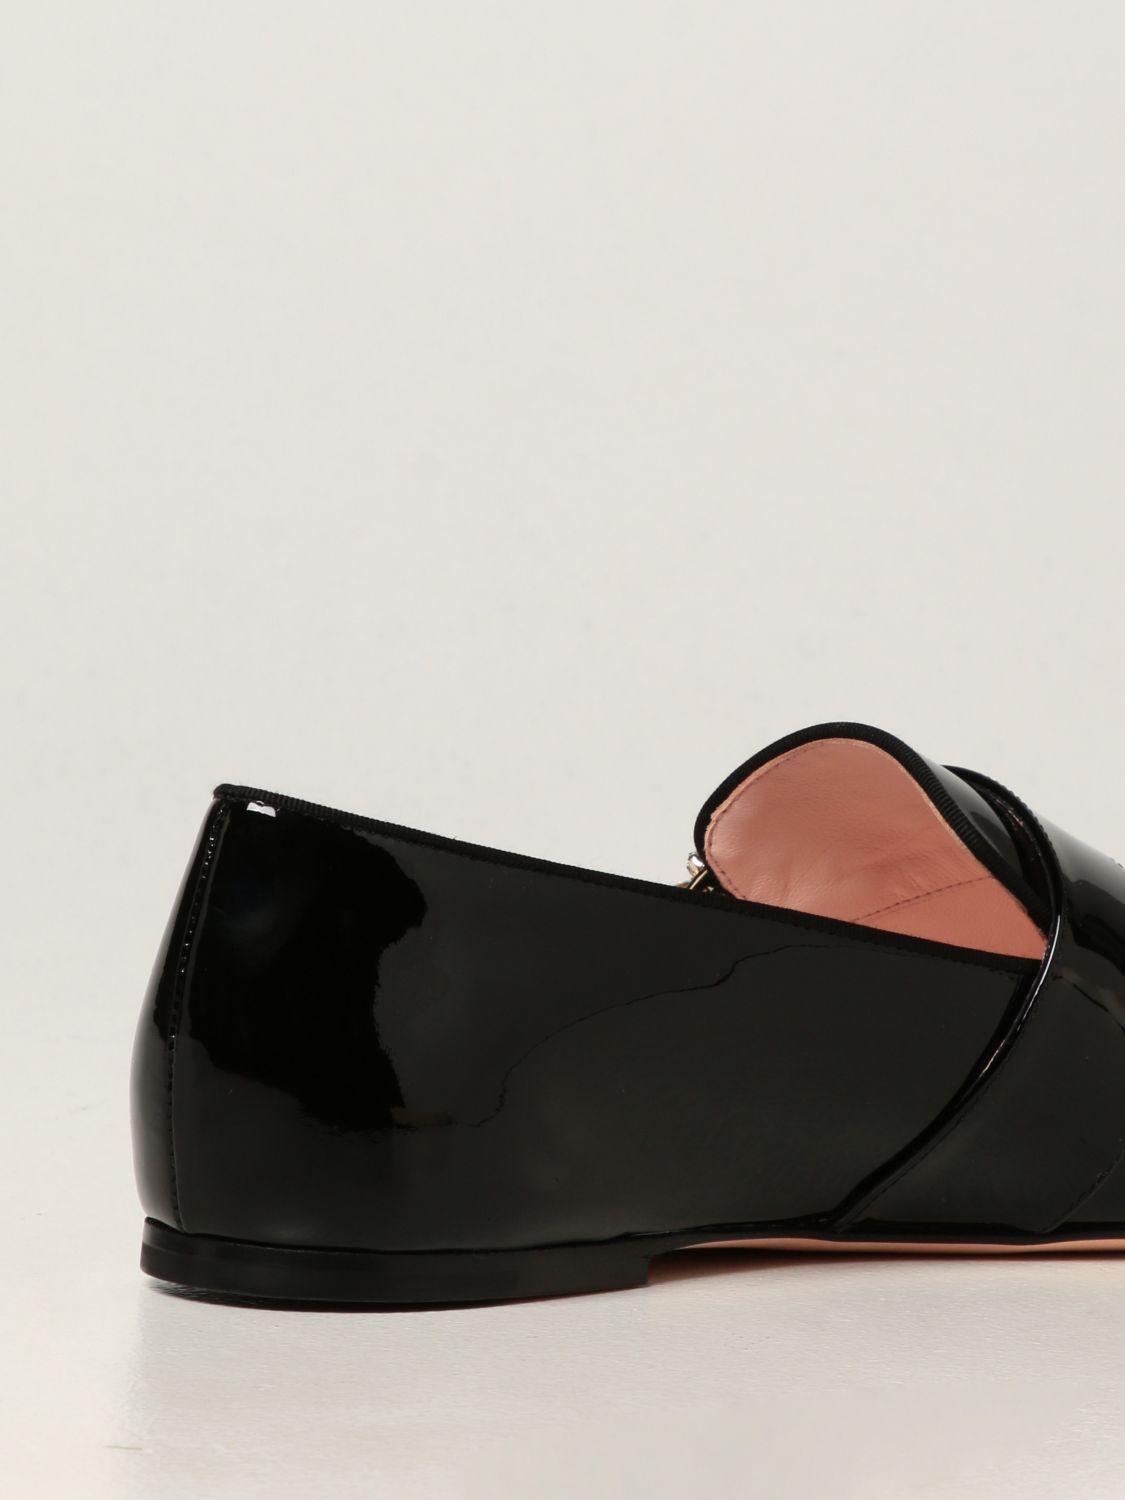 sandalias y chanclas de Mocasines Mujer Zapatos de Zapatos planos Mocasines Roger Vivier de Cuero de color Negro 